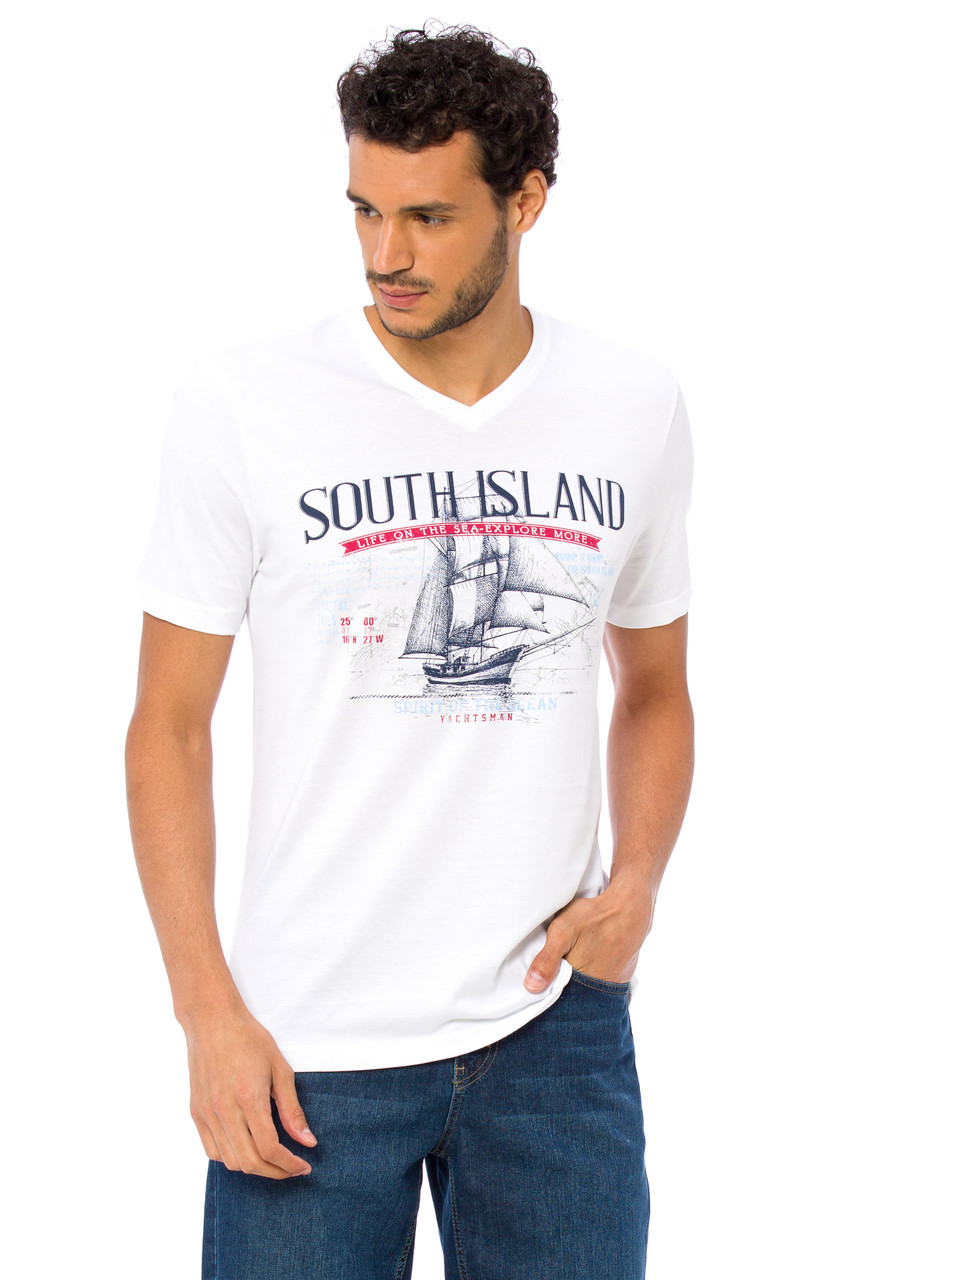 Біла чоловіча футболка LC Waikiki / ЛЗ Вайкікі з написом South island